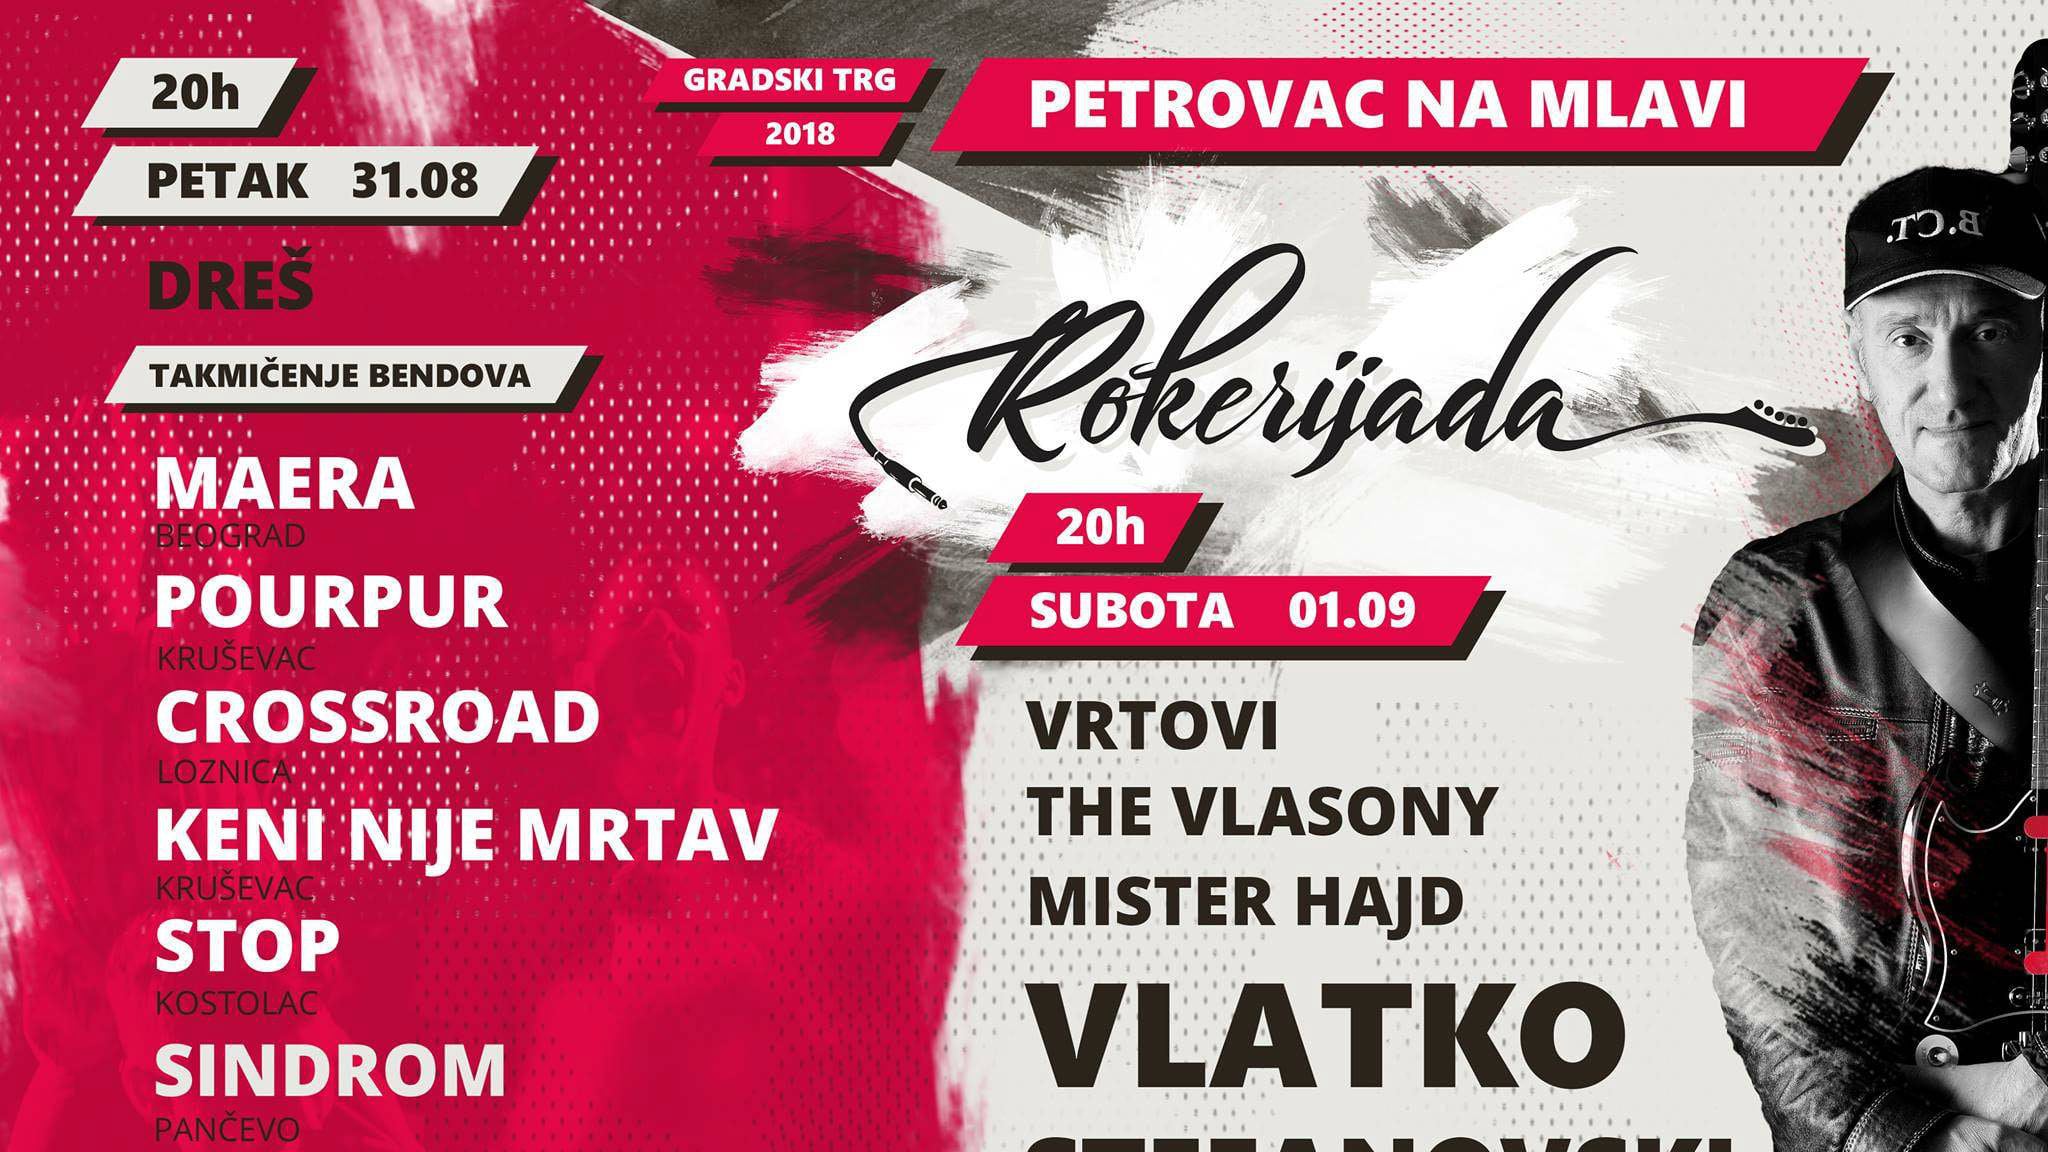 Festival "Rokerijada" u Petrovcu na Mlavi od 31. avgusta 1